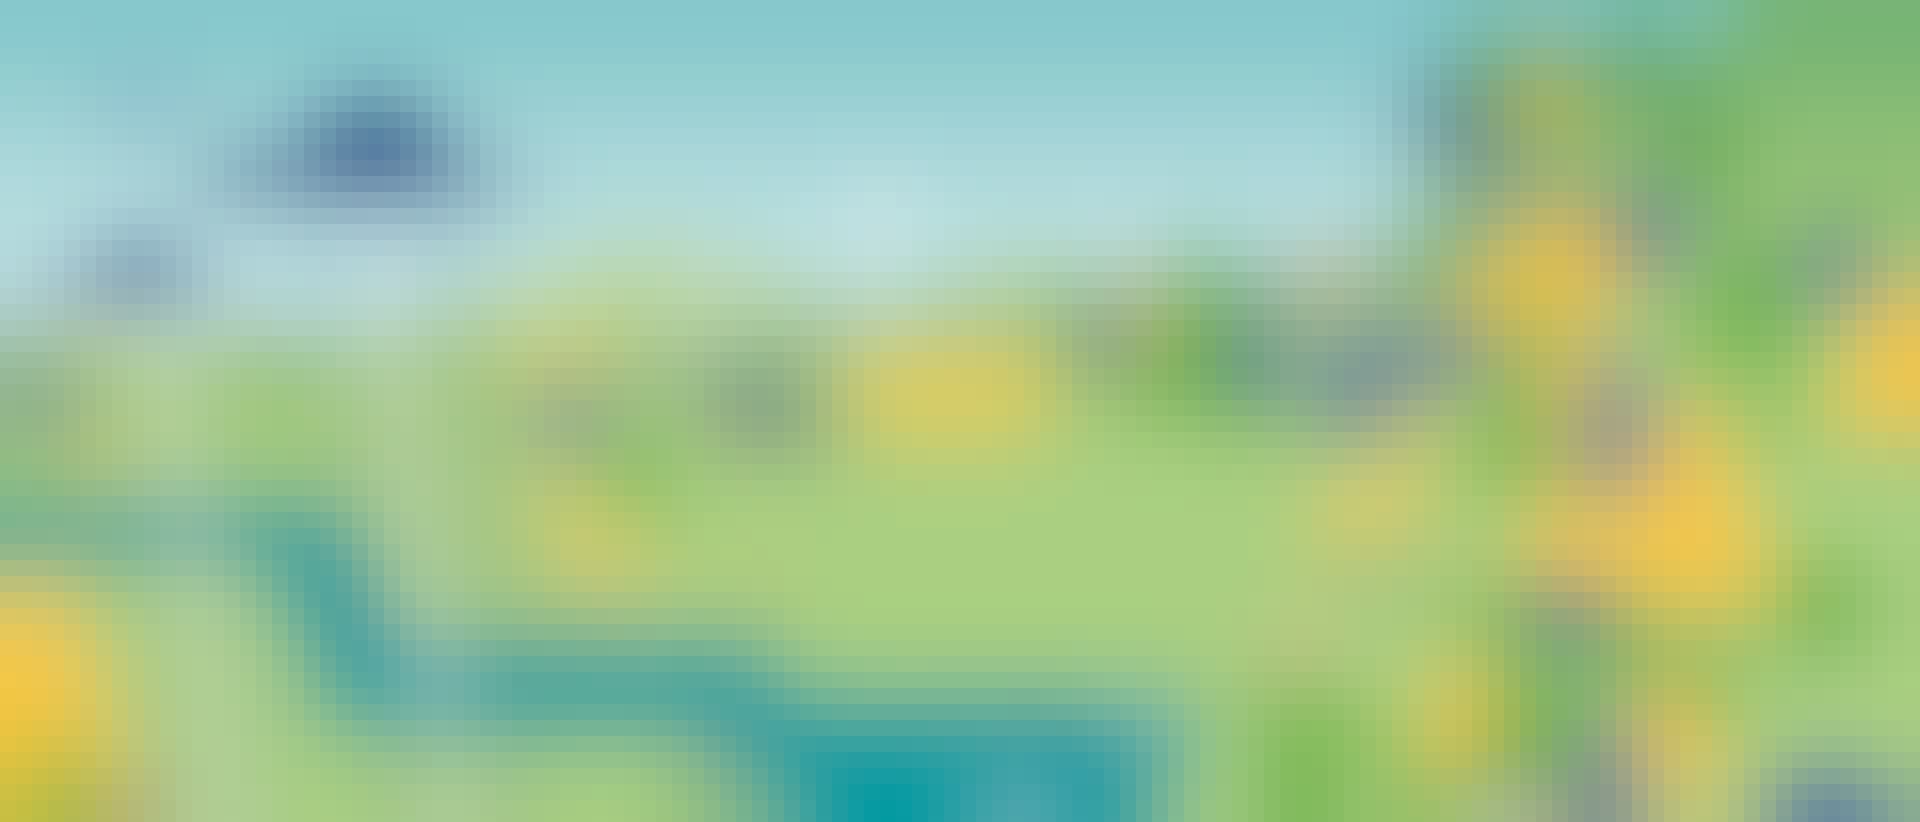 Dieses Bild zeigt eine Wiese, auf der Bäume und Tannen in grün und blau stehen. Es sind auch Rehe zu sehen und ein Traktor.